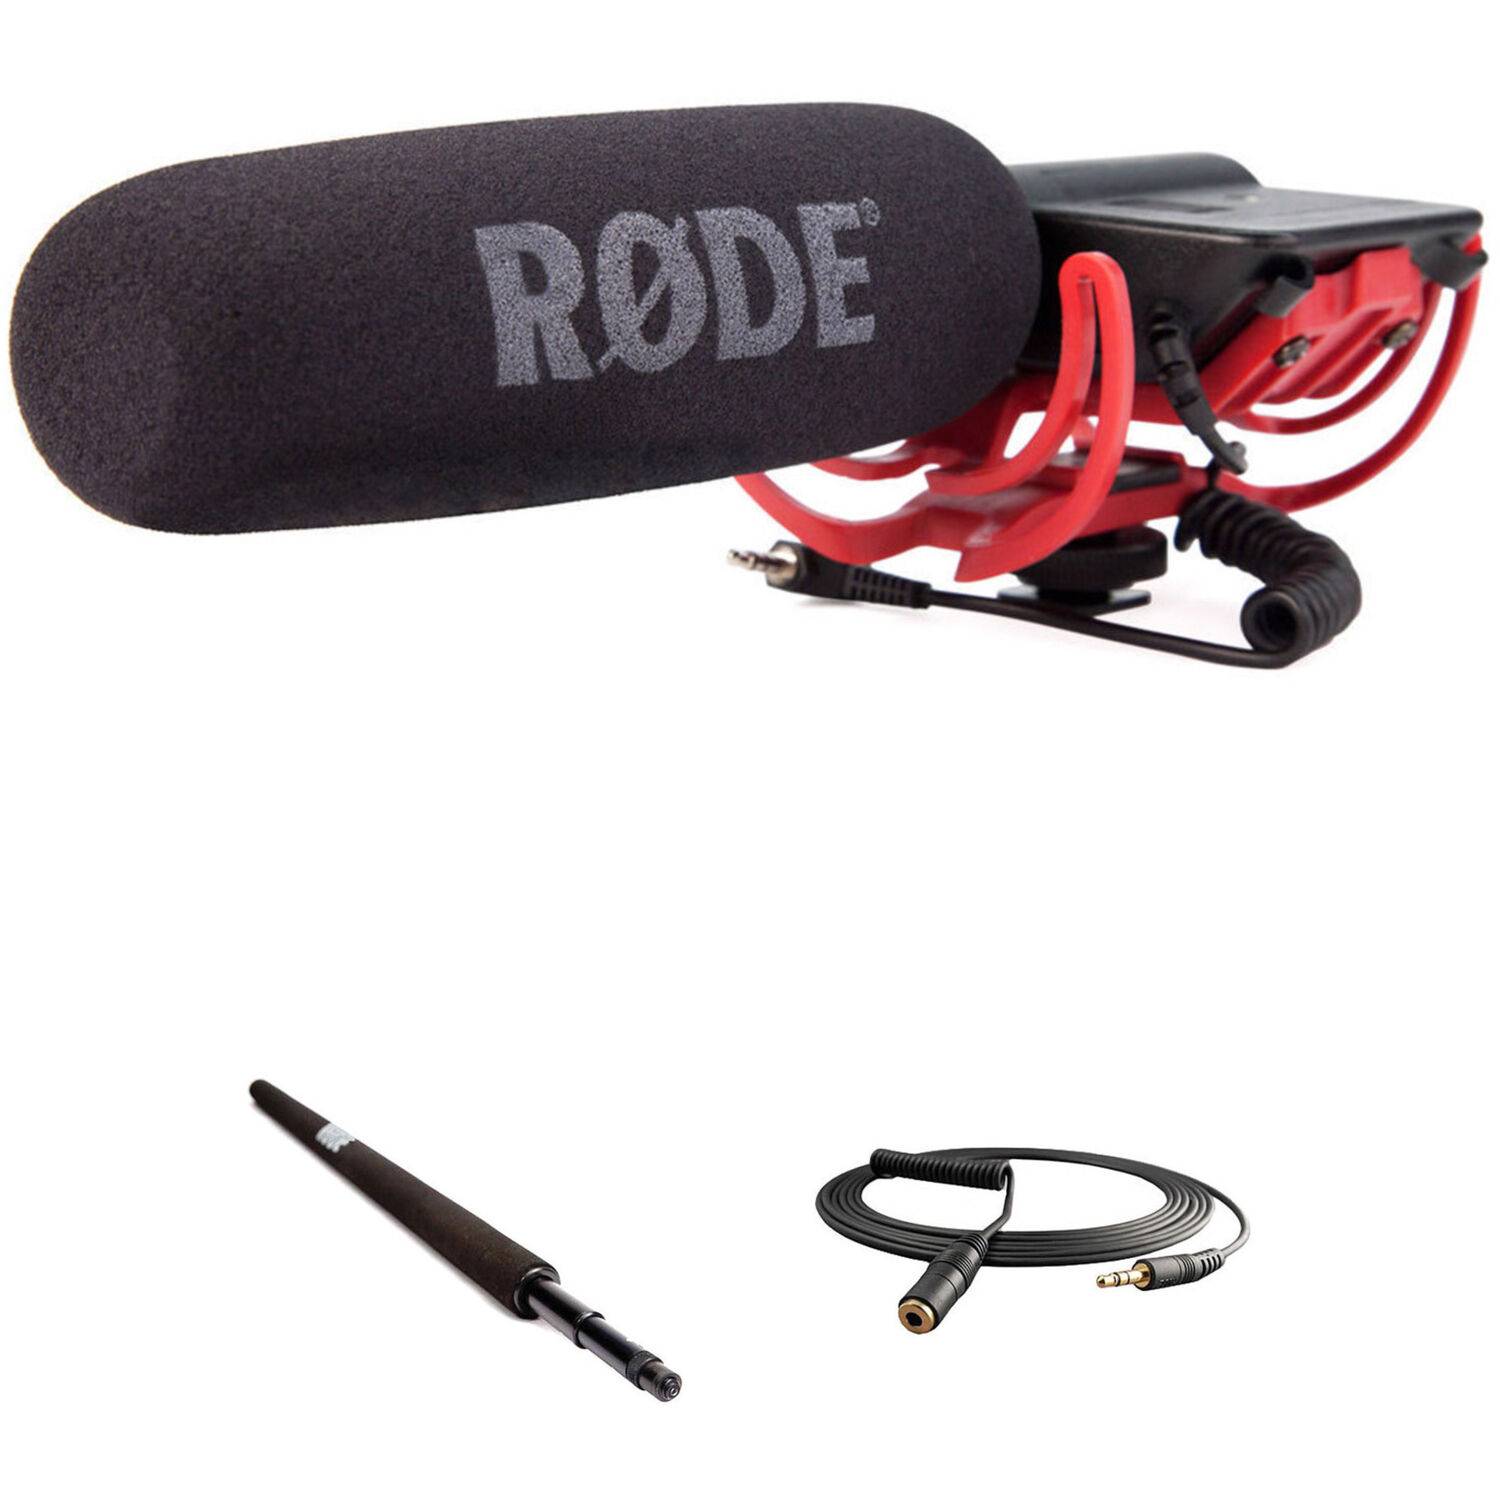 Kit de Micrófono de Cañón Rode Videomic para Montar en Cámara con Micro Boompole y Cable de Extensió